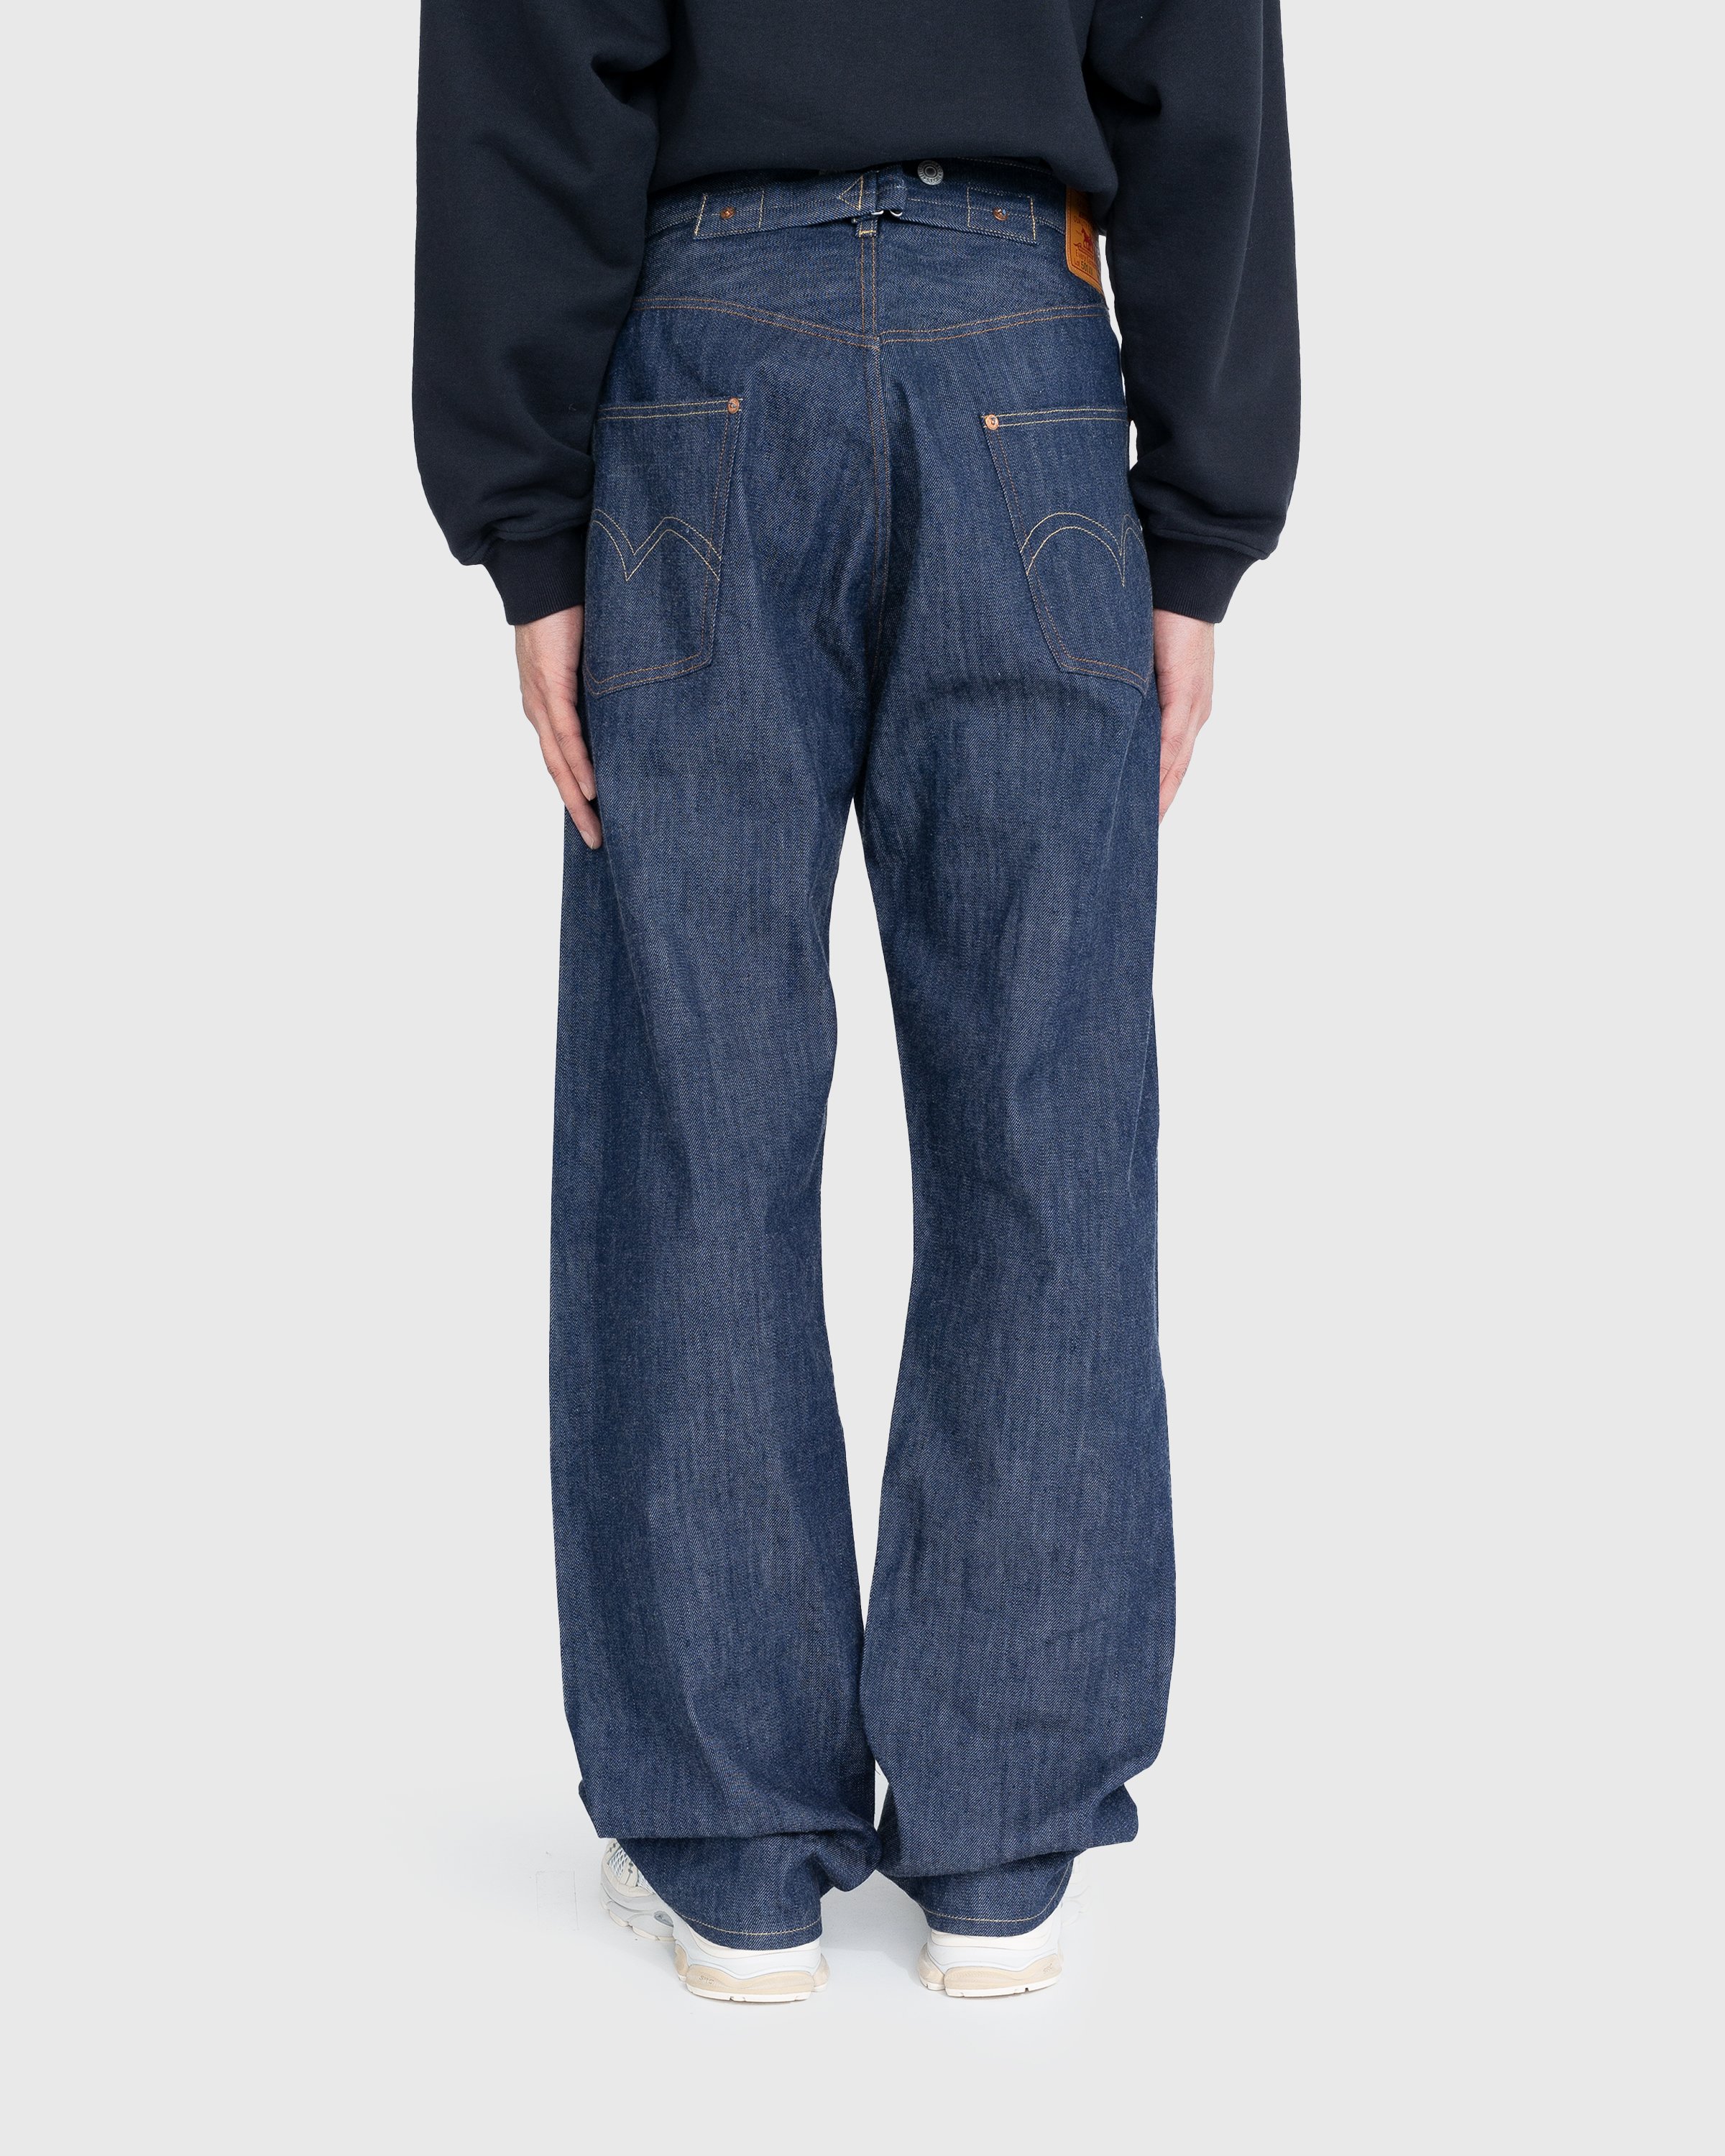 Levi's - 1922 501 Jeans Dark Indigo Flat Finish - Clothing - Blue - Image 4